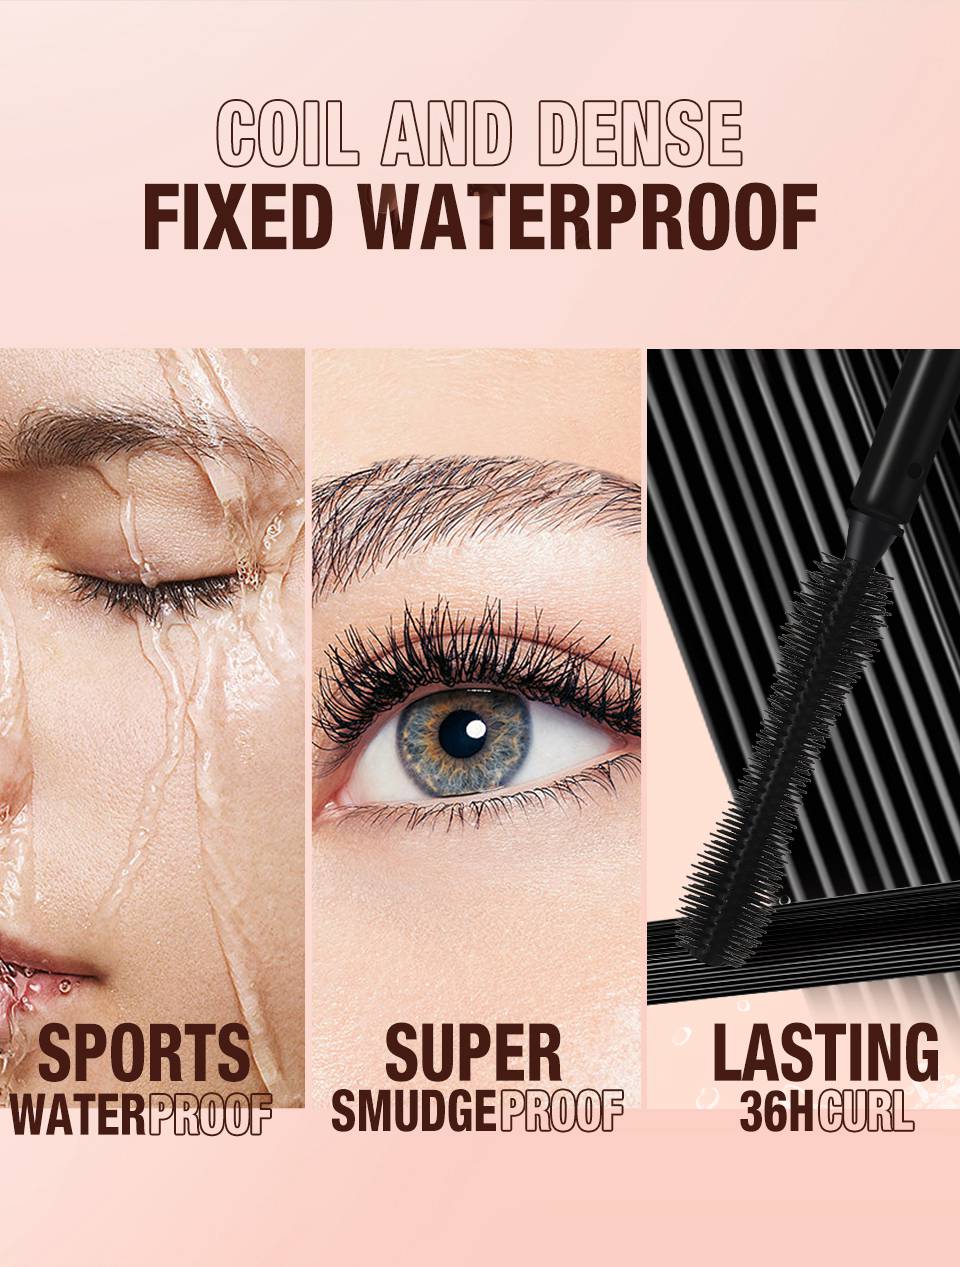 SC046 Ultra Waterproof Volumizing Mascara